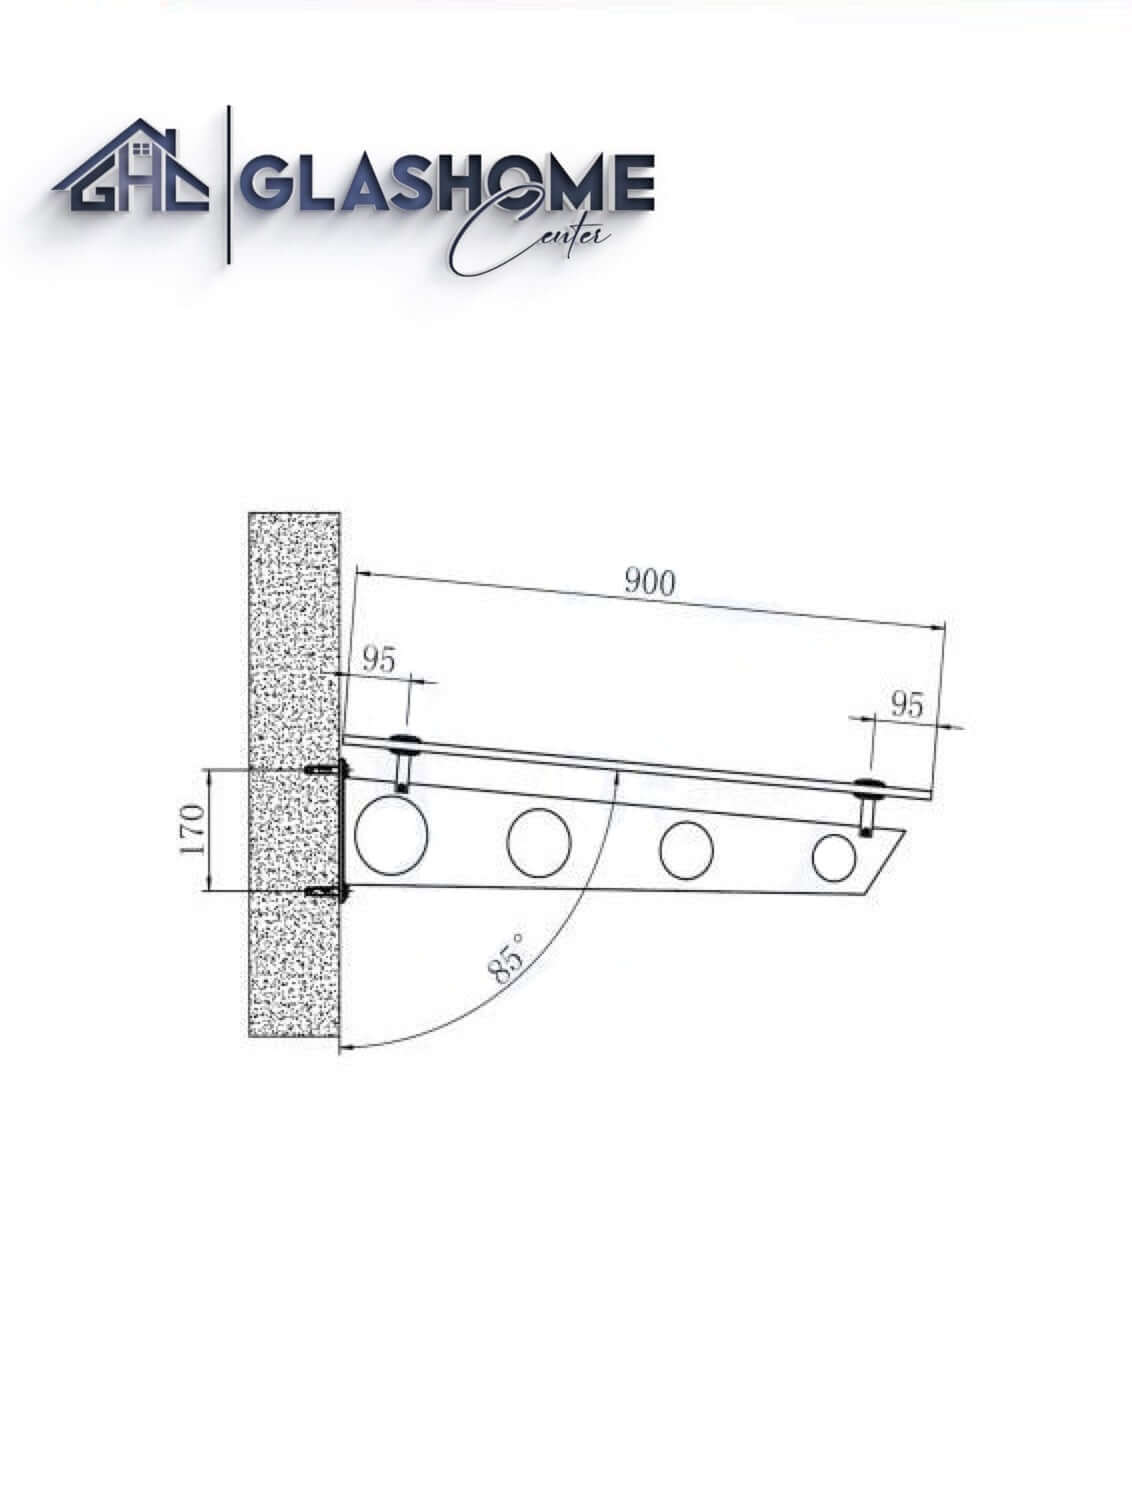 GlasHomeCenter - Glasvordach - Milchglas - 120x90cm - 13,1mm VSG - incl. 2 varianti Edelstahlhalterungen nere "Stoccolma"